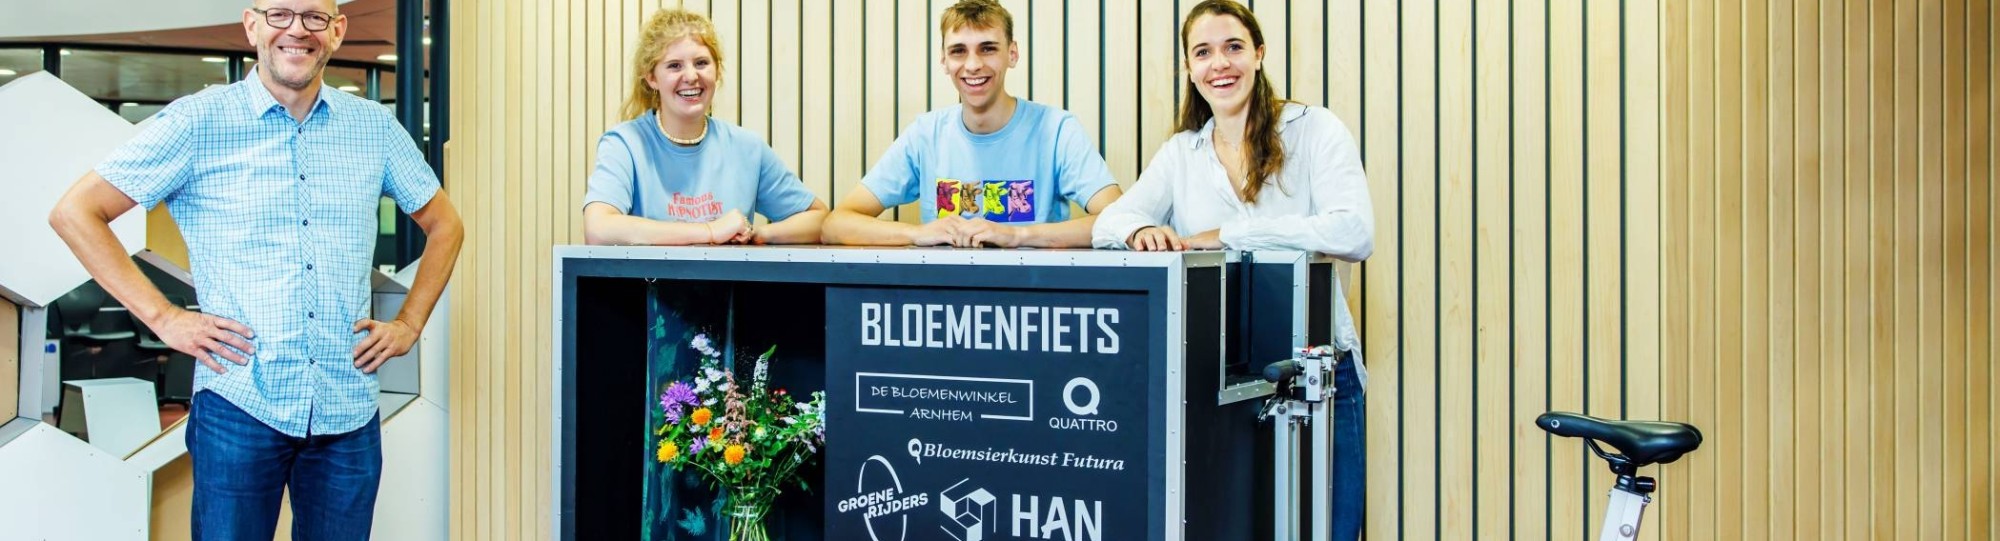 Studenten Industrieel Product Ontwerpen - IPO - trots op hun project Bloemenfiets met opdrachtgever Hans Schreuder, zelfstandig adviseur en ontwikkelaar, vooral op gebied van fietsbeleid en innovatie.